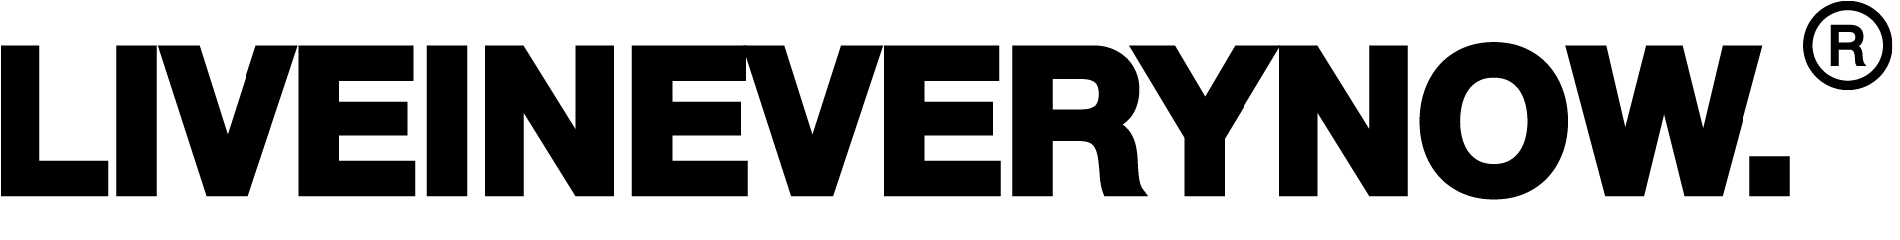 LIVEINEVERYNOW logo